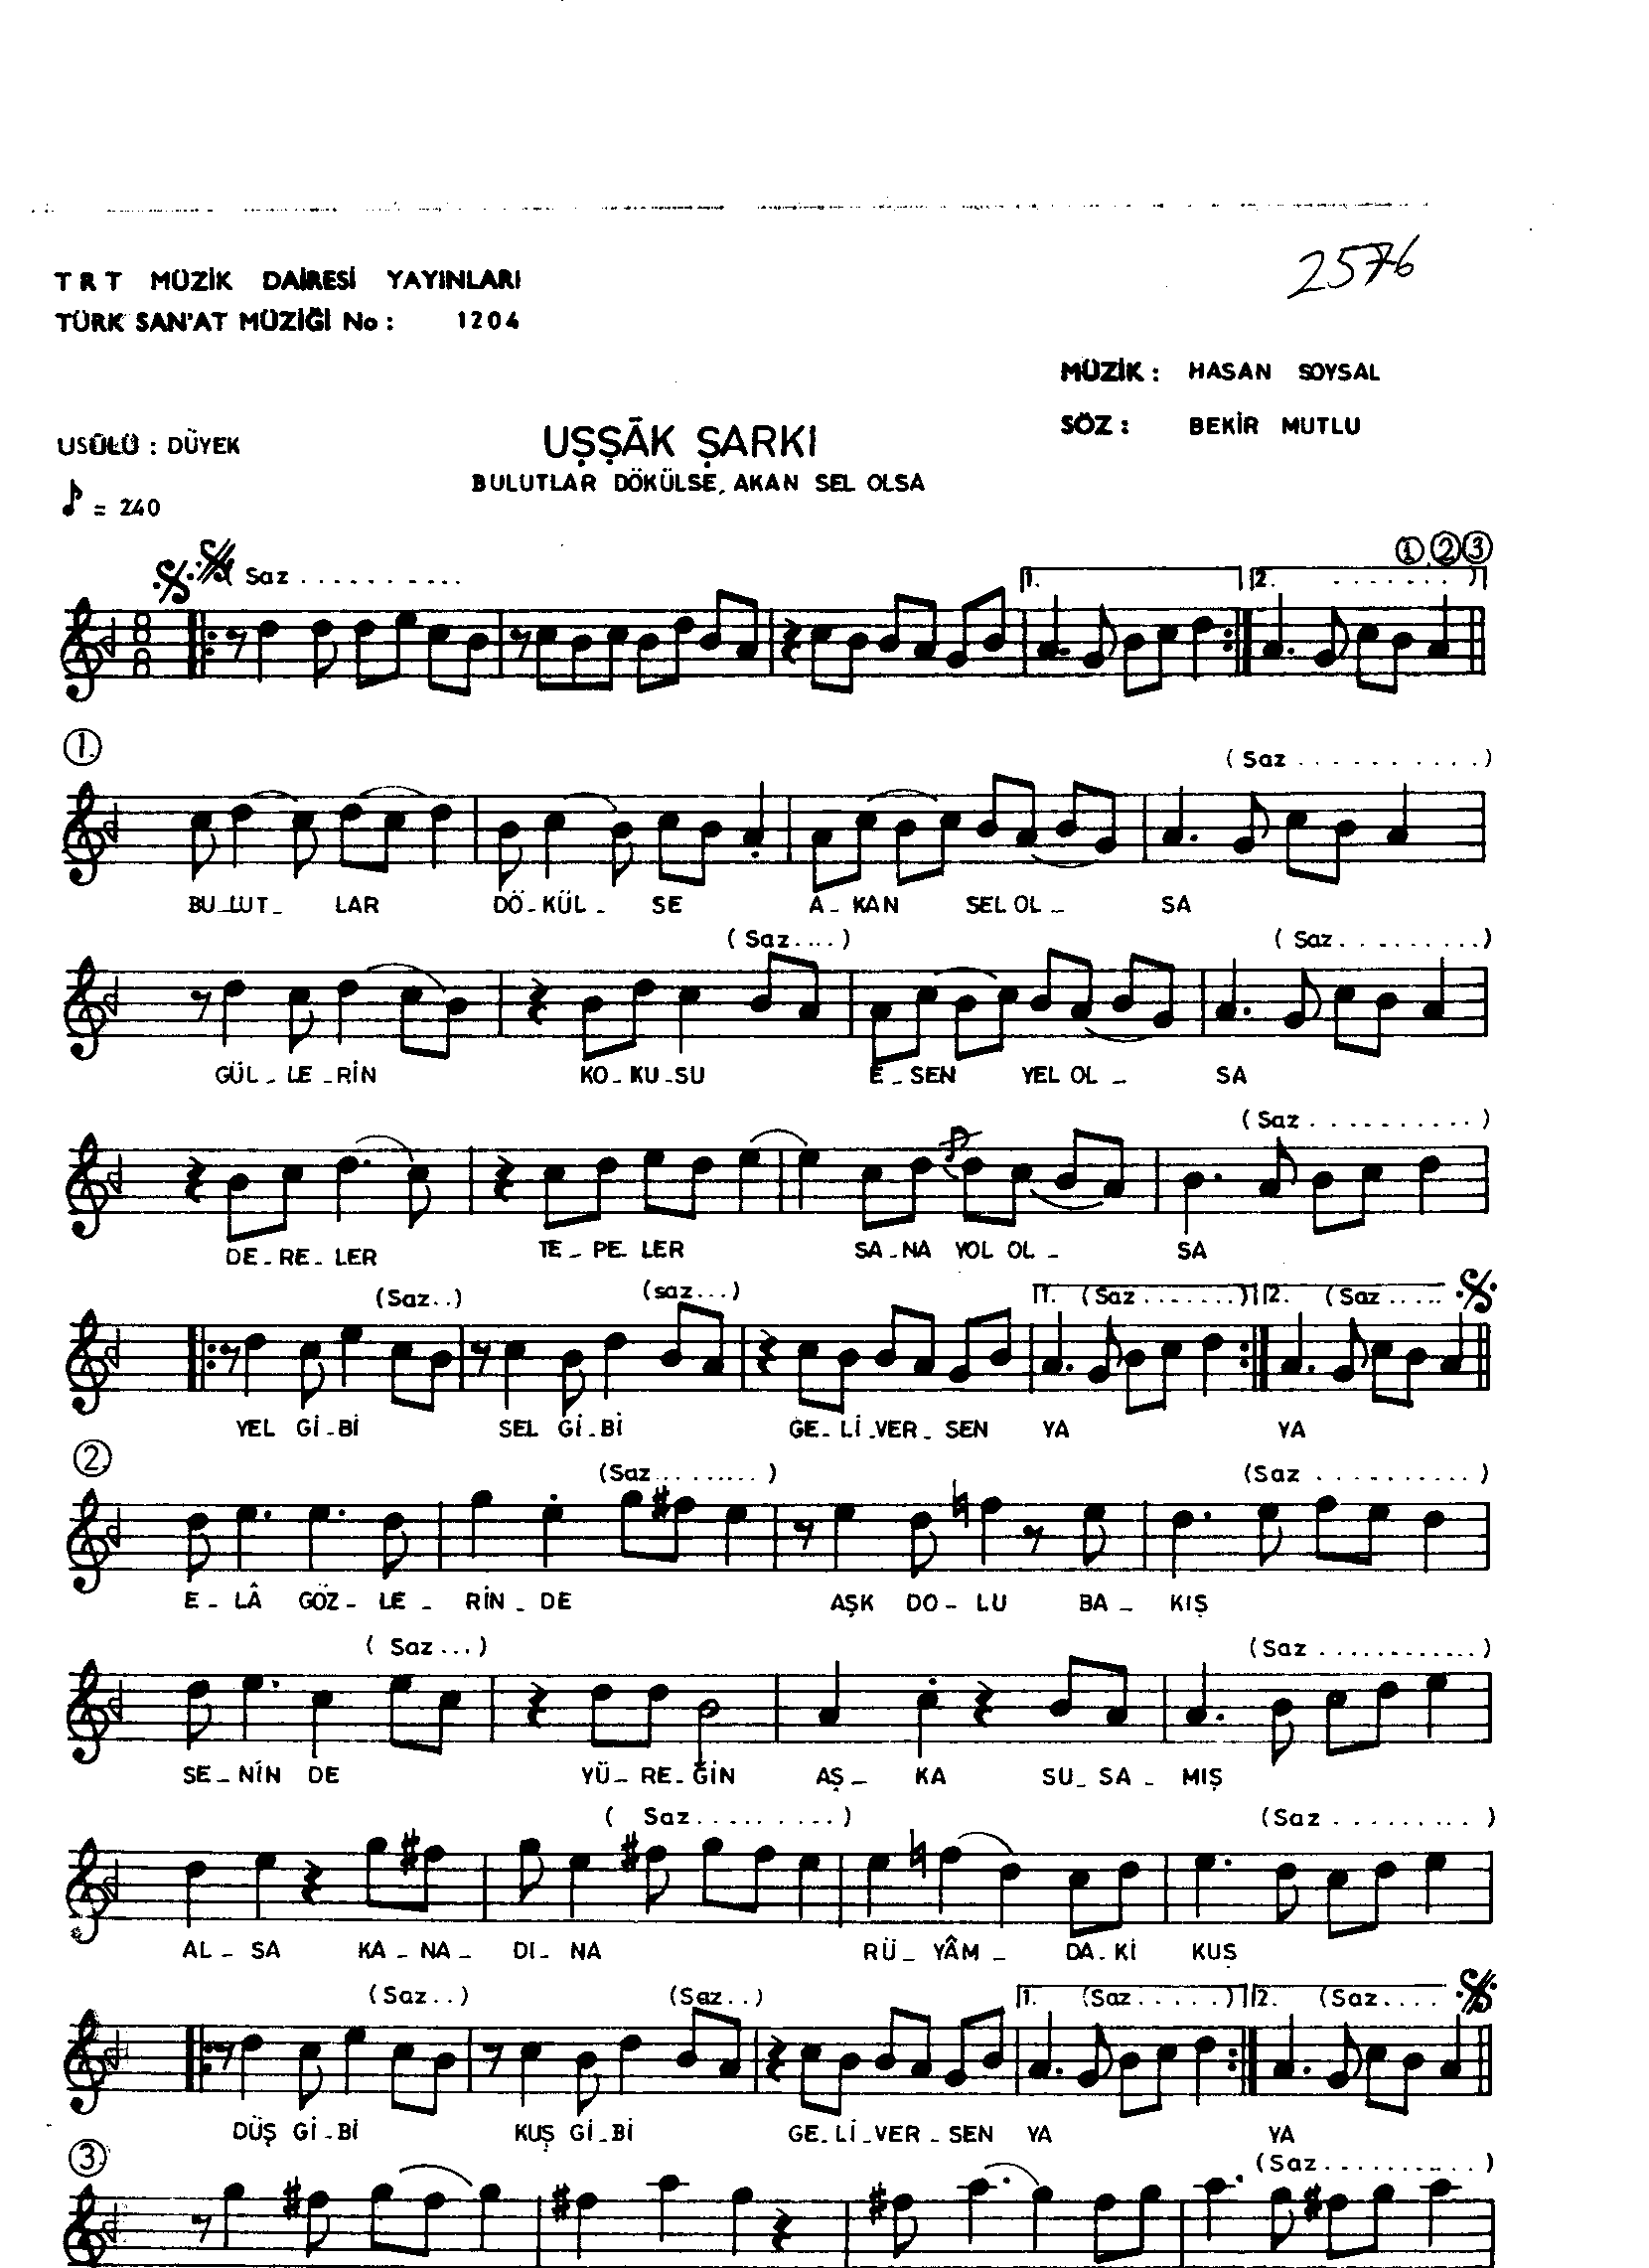 Uşşak - Şarkı - Hasan Soysal - Sayfa 1